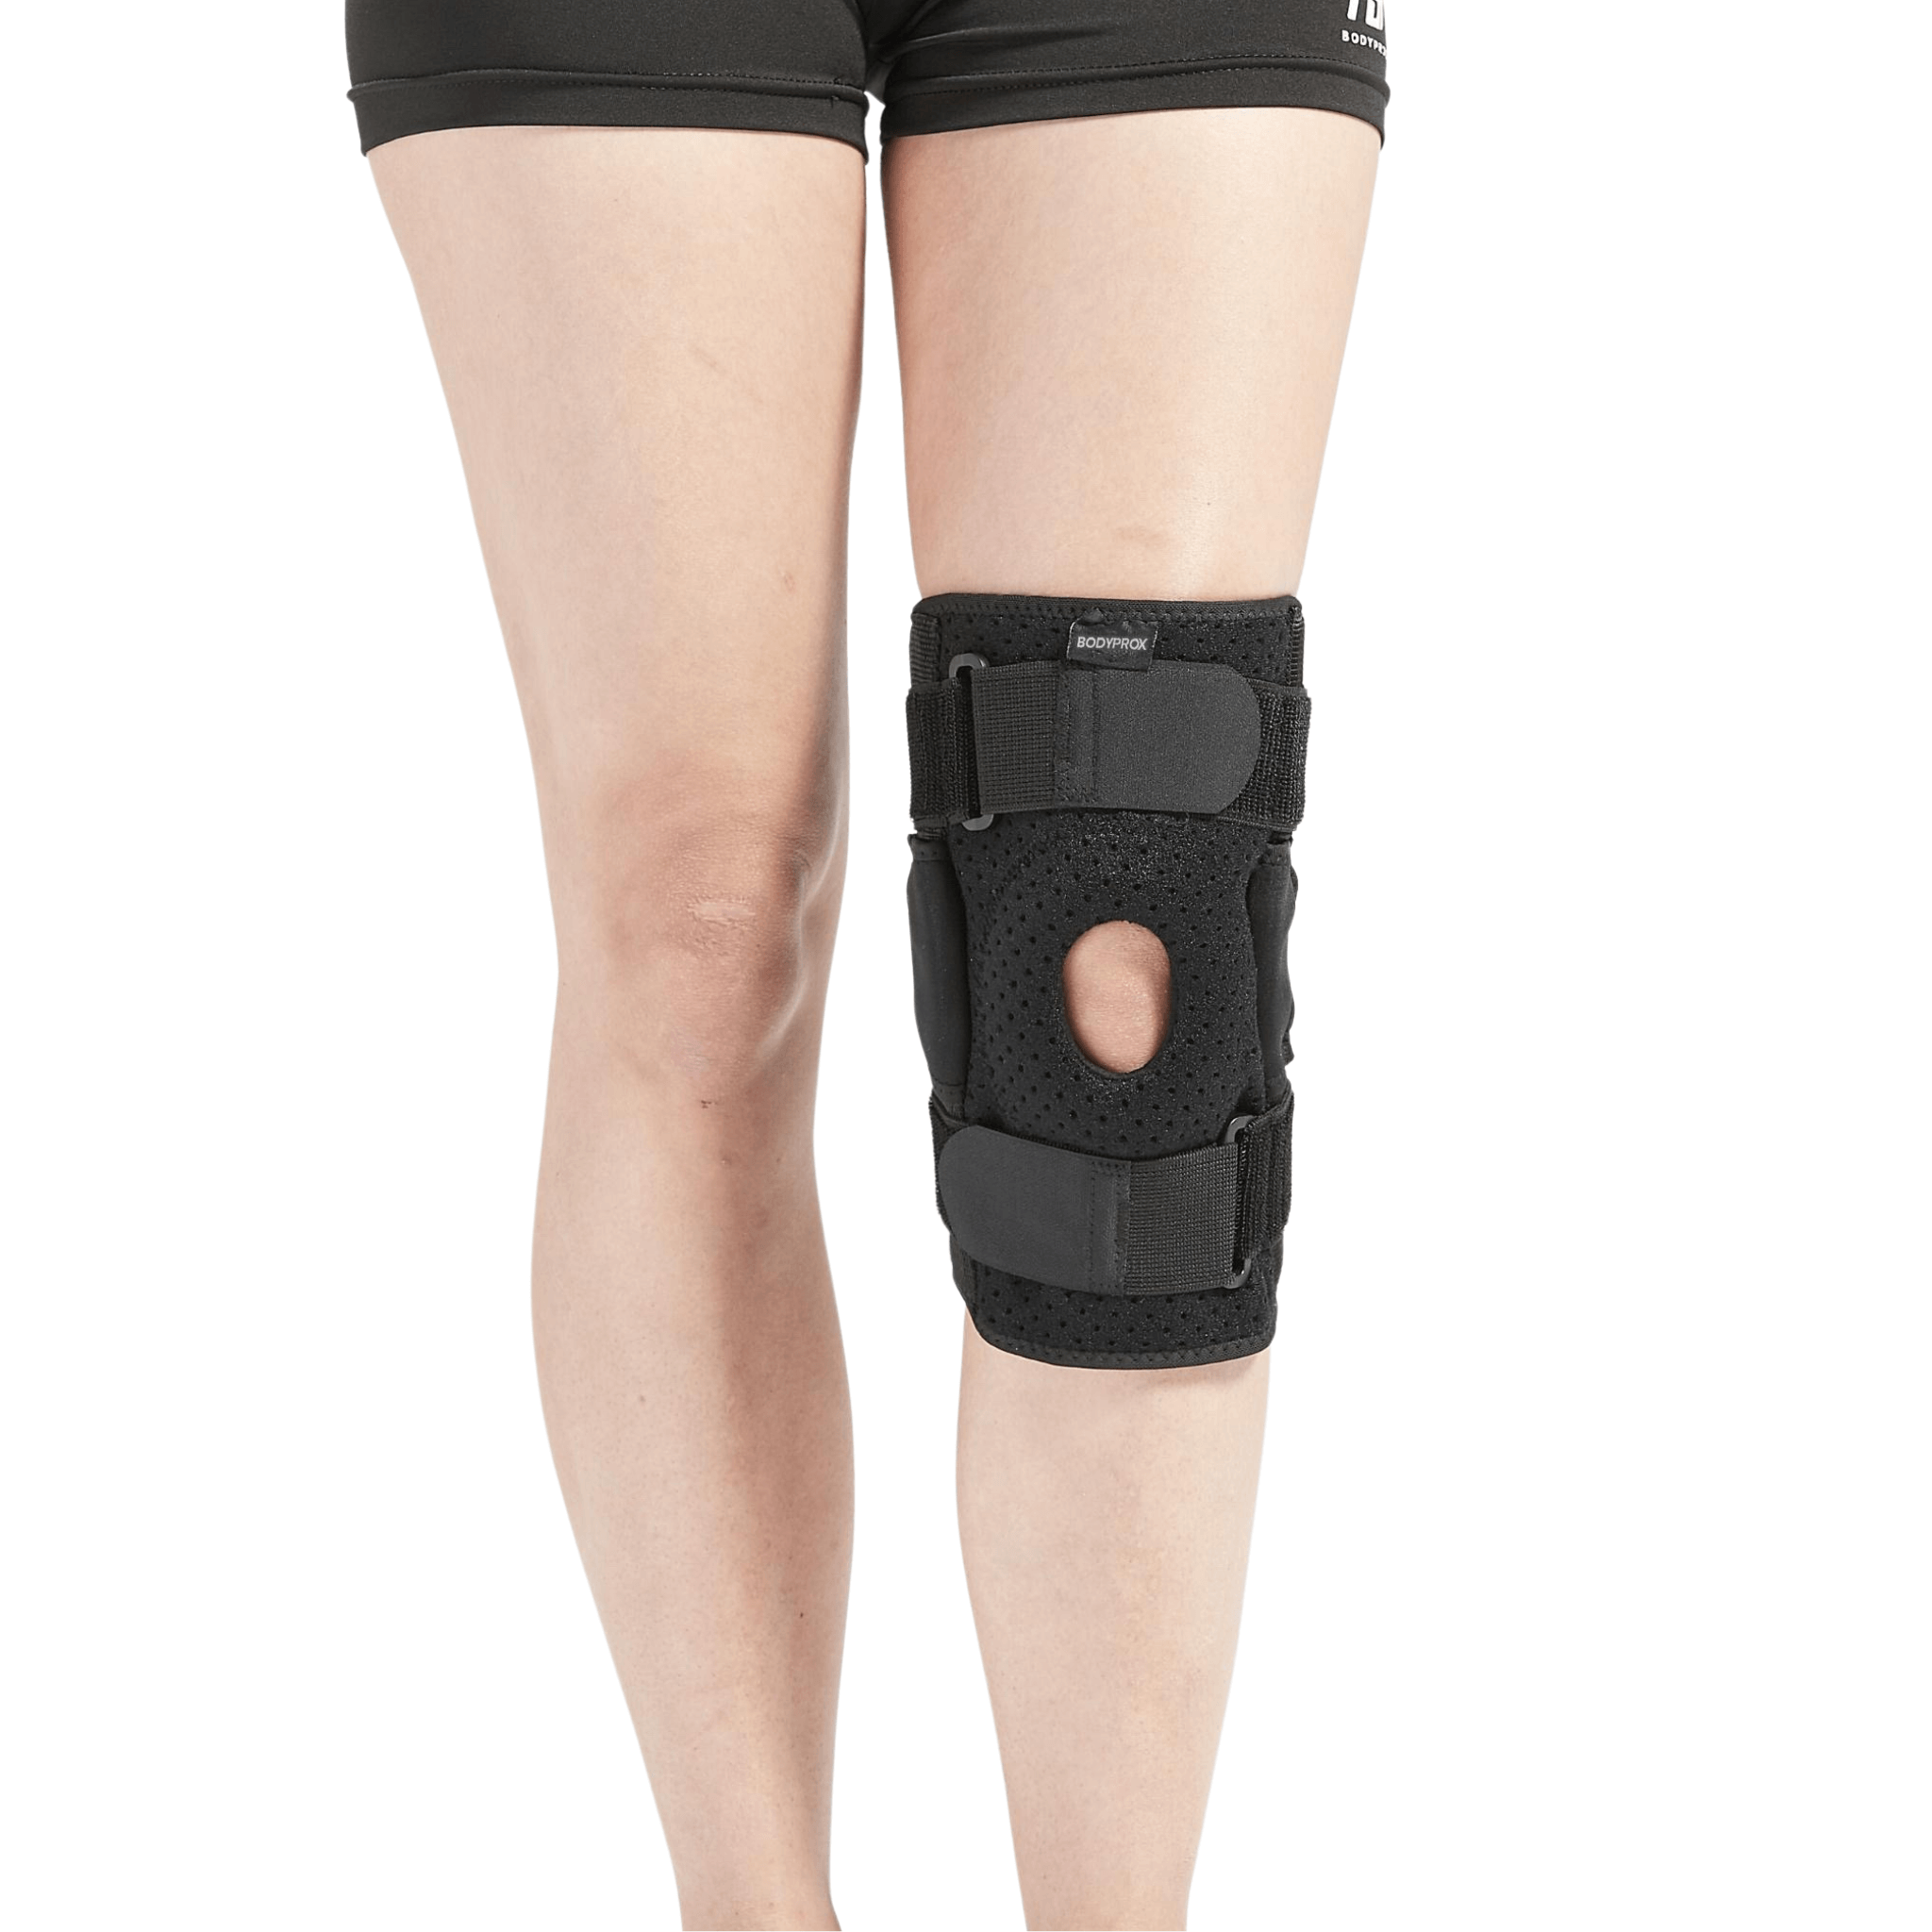 Safe-T-Sport® Wrap- Hinged Knee Brace, Xxxl Black